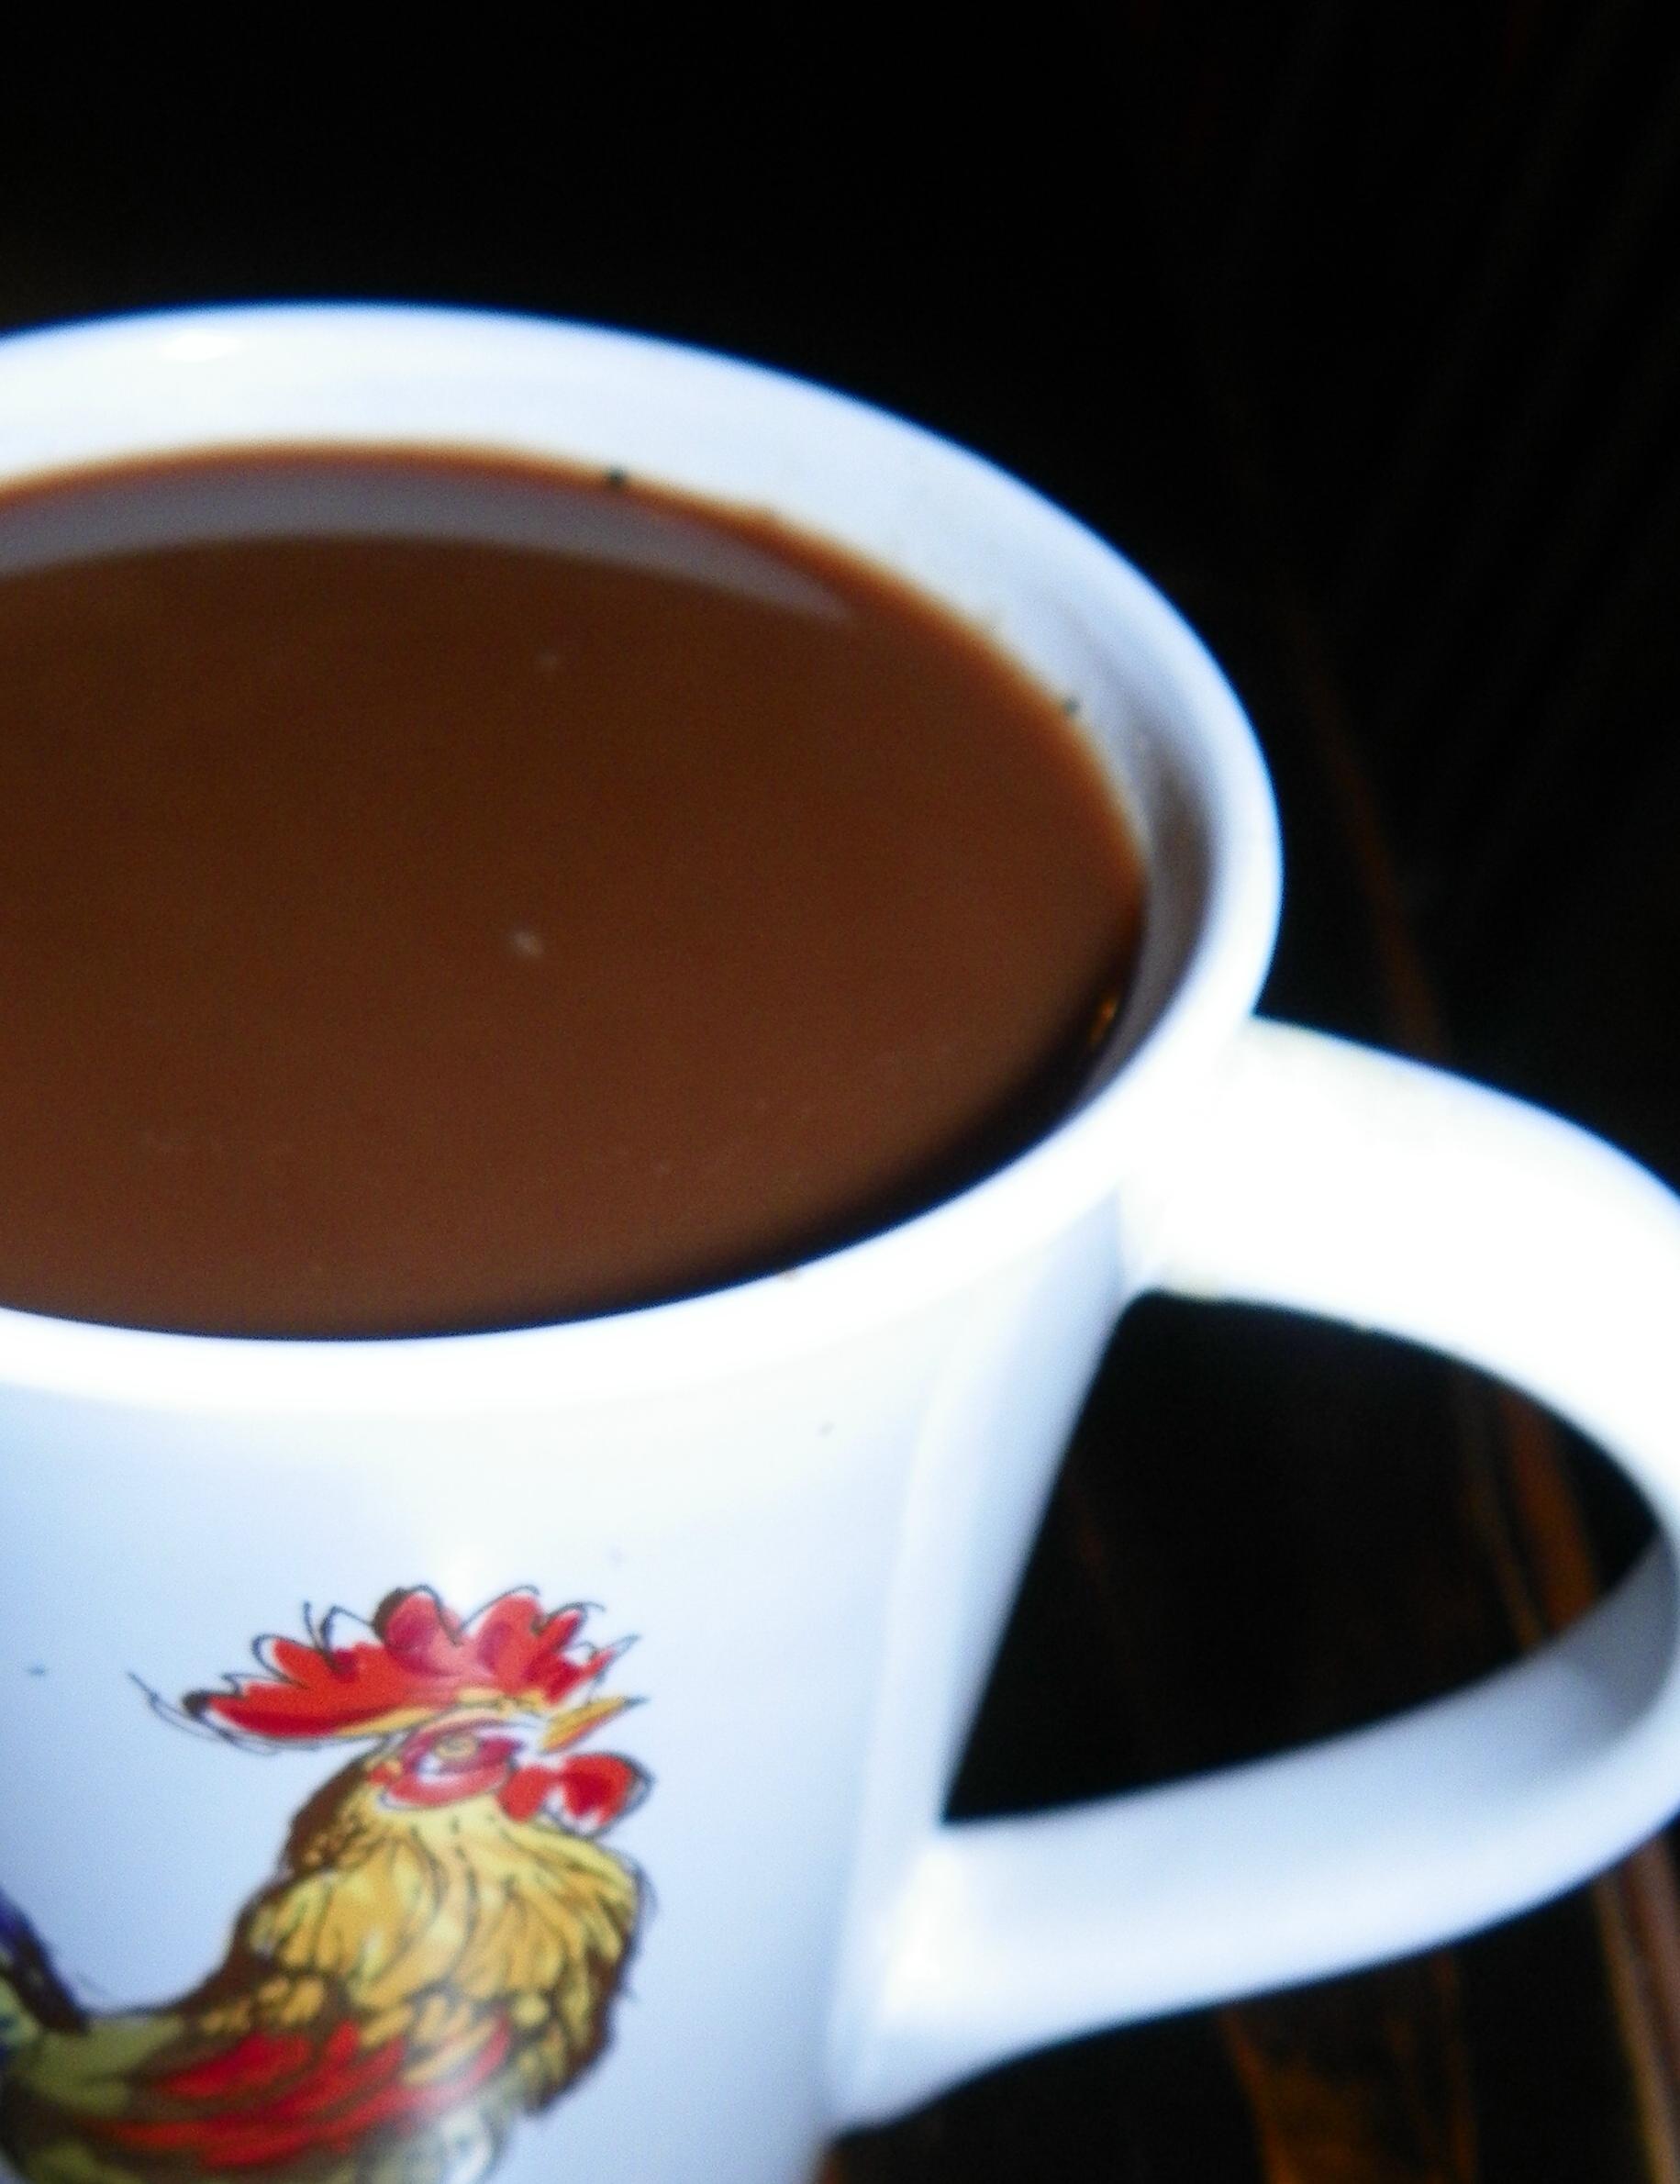 Hazel-Cocoa Prepared Coffee